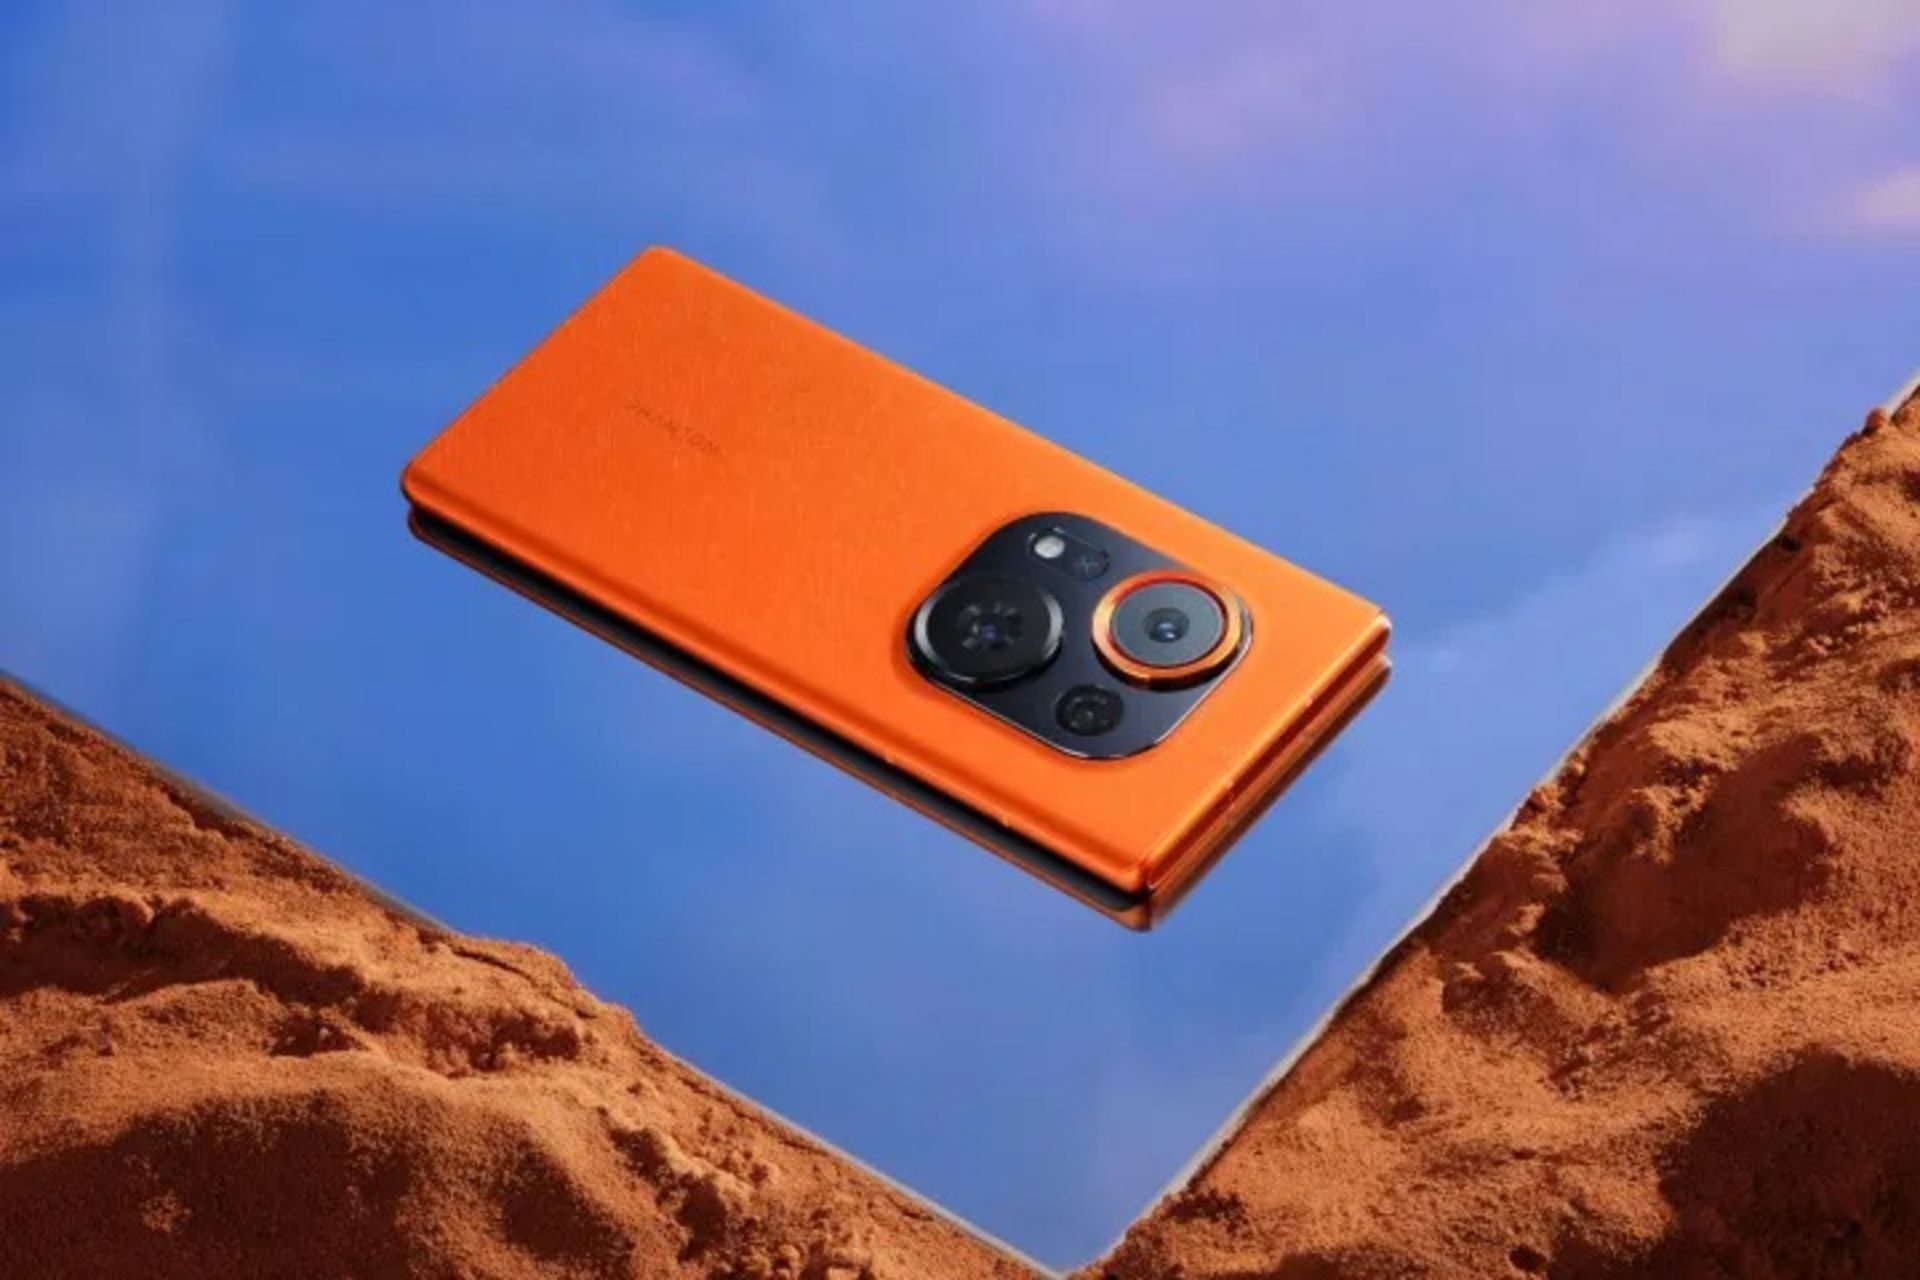 قاب پشتی گوشی تکنو رنگ نارنجی قرار گرفته روی شن